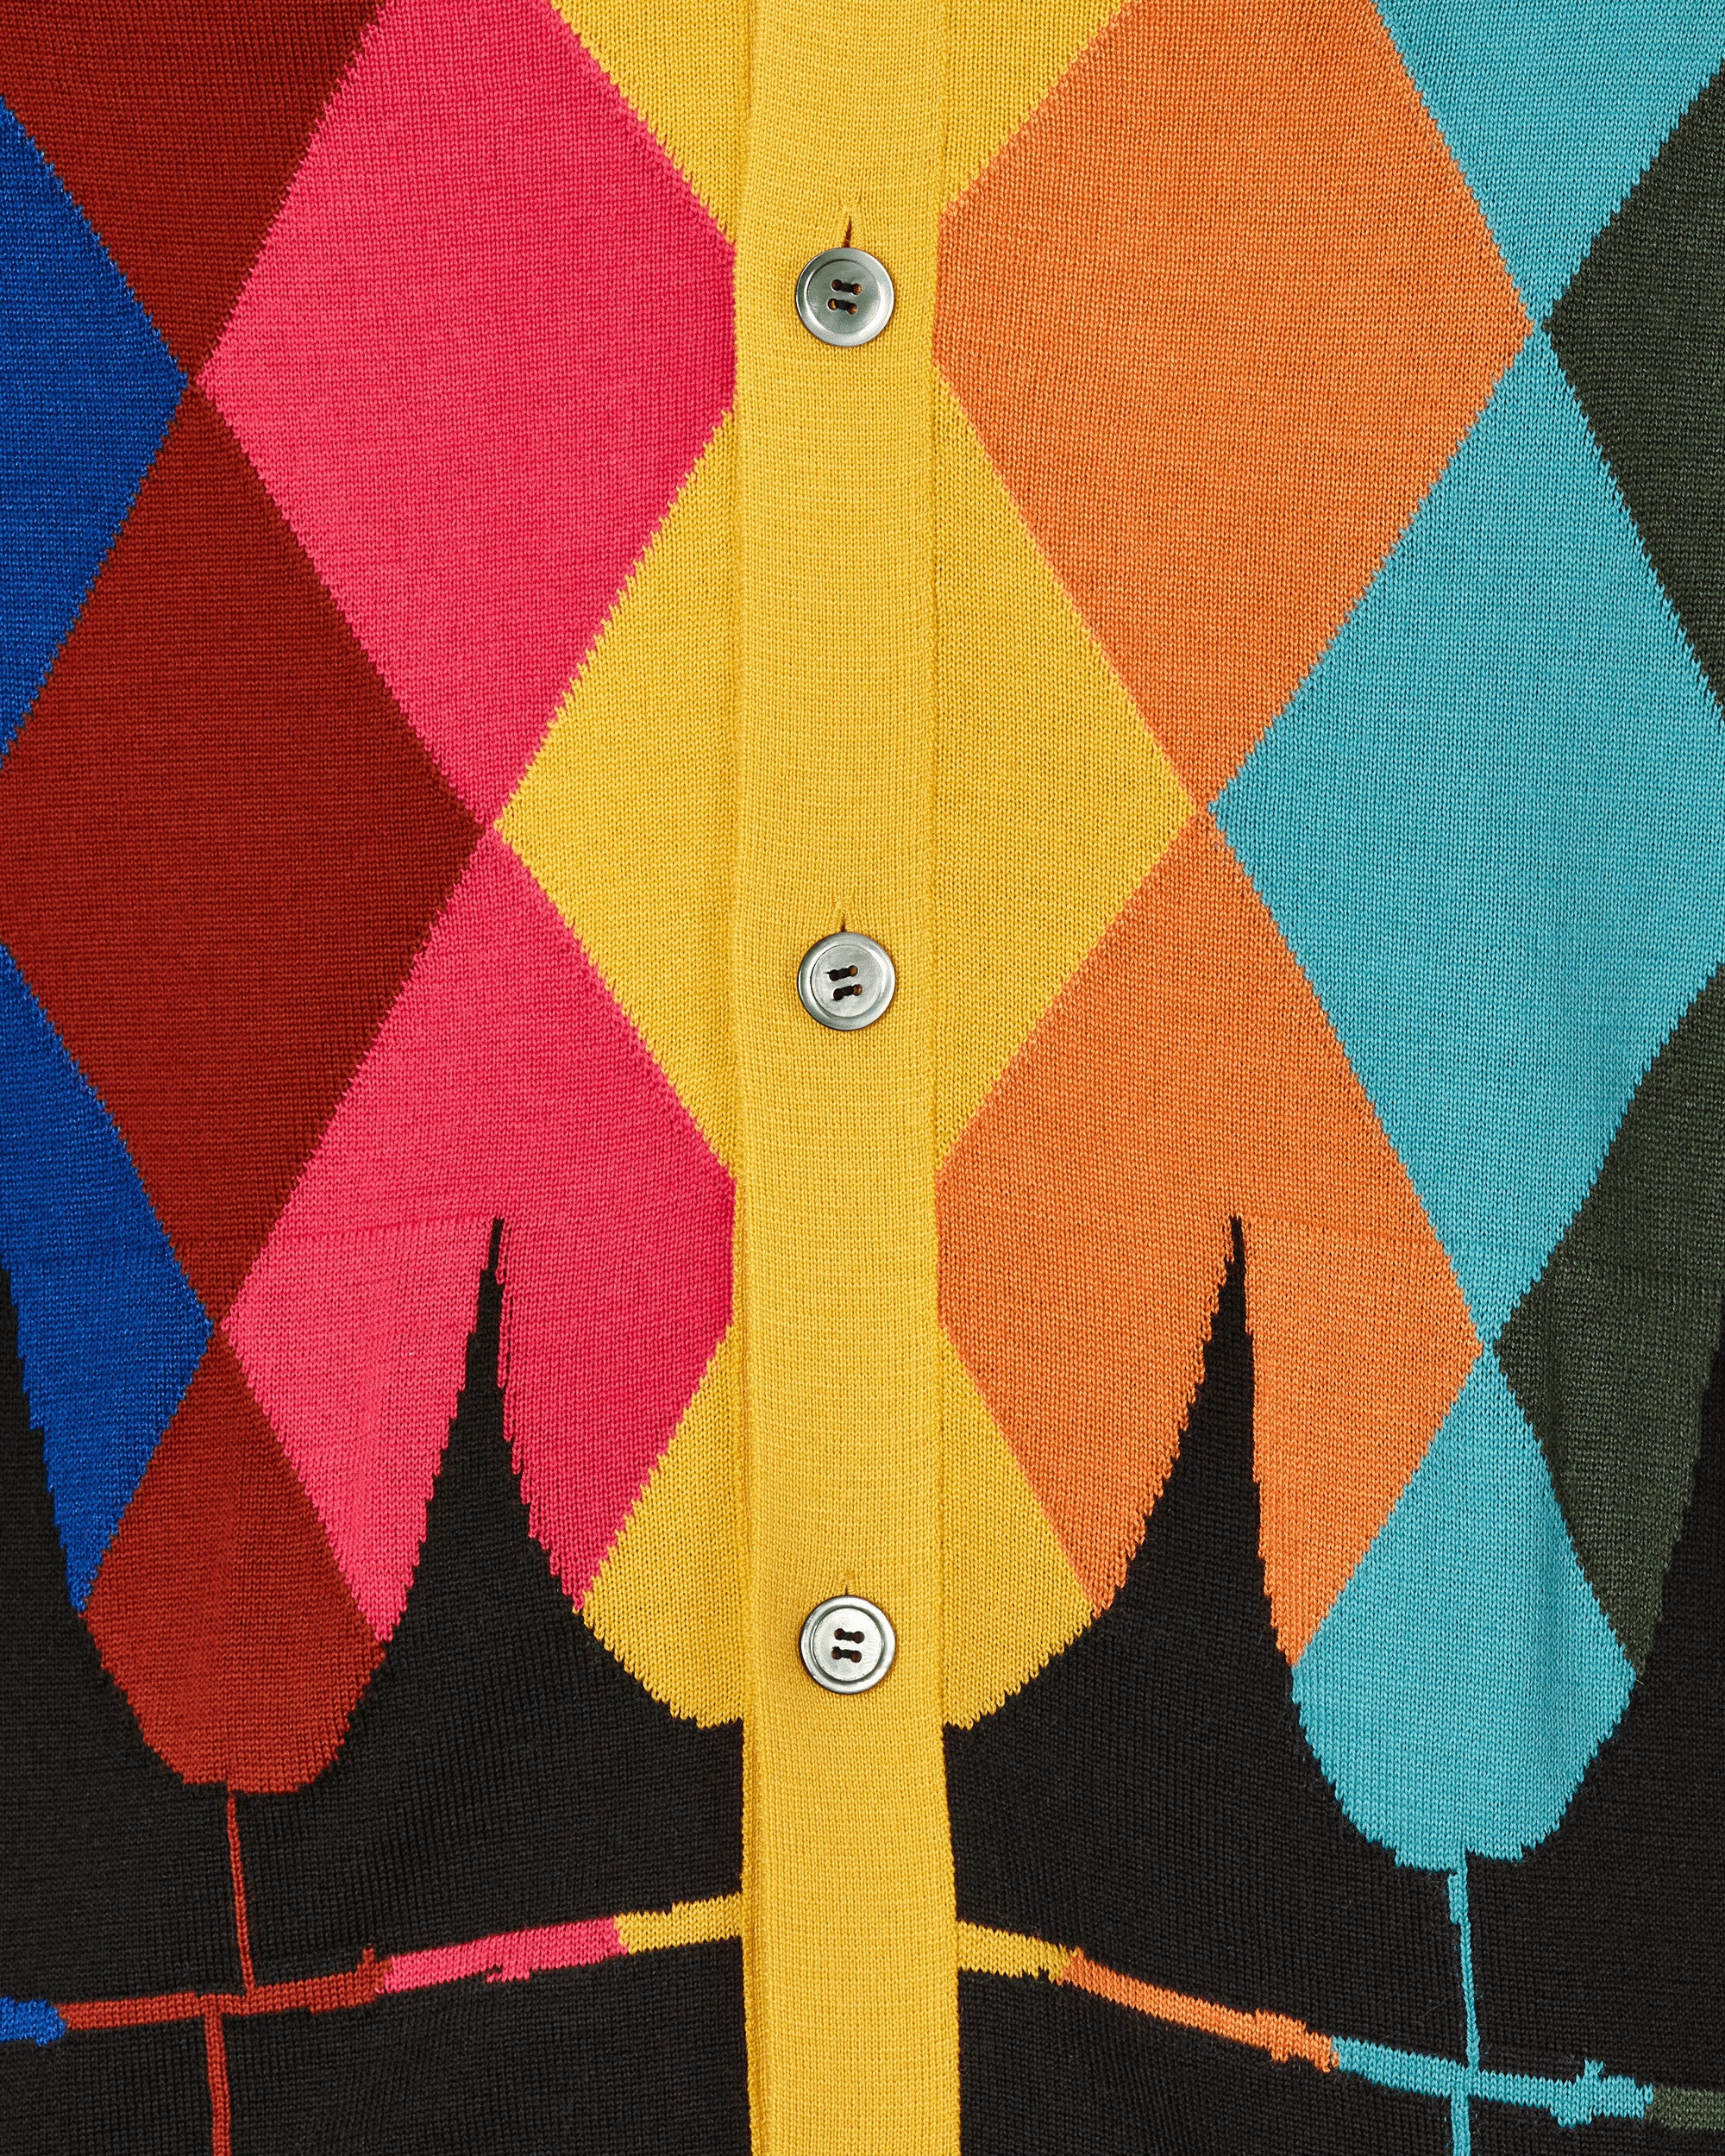 Comme Des Garçons Homme Plus Men'S Sweater Yellow/Multicolor Knitwears Cardigans PK-N003-051 1